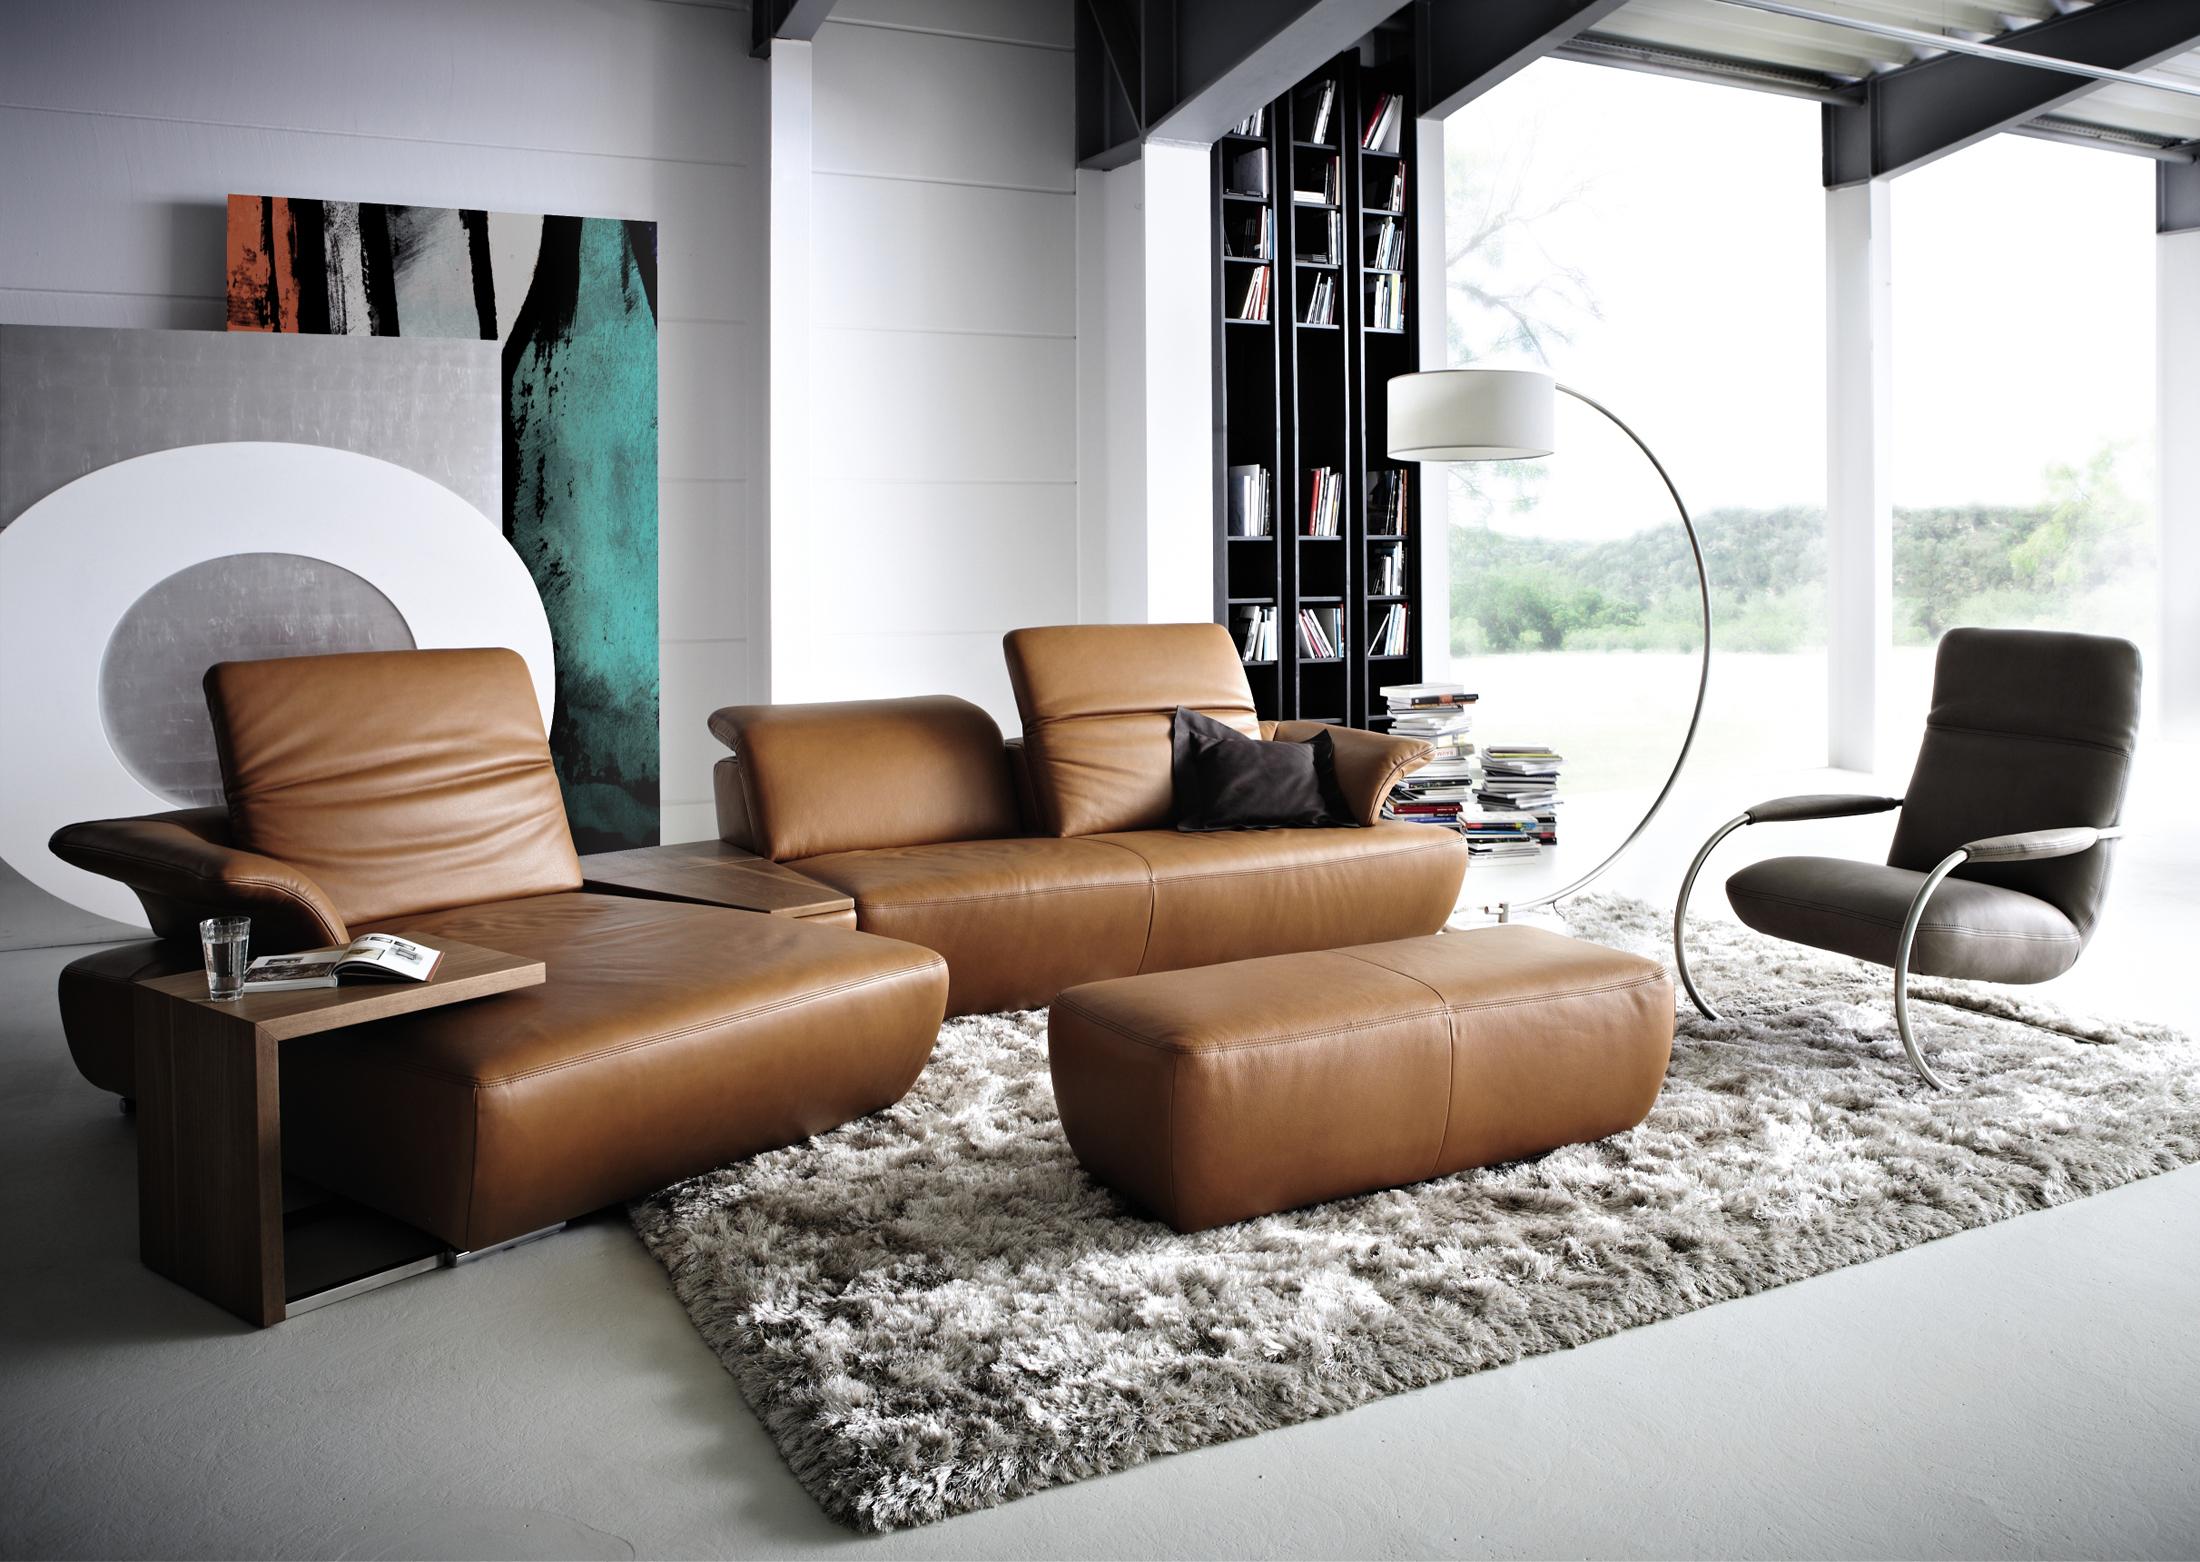 Loungesofa im Wohnzimmer #teppich #ecksofa #ledersofa #sessel #sofa #grauersessel #braunessofa #braunesledersofa #zimmergestaltung ©Koinor